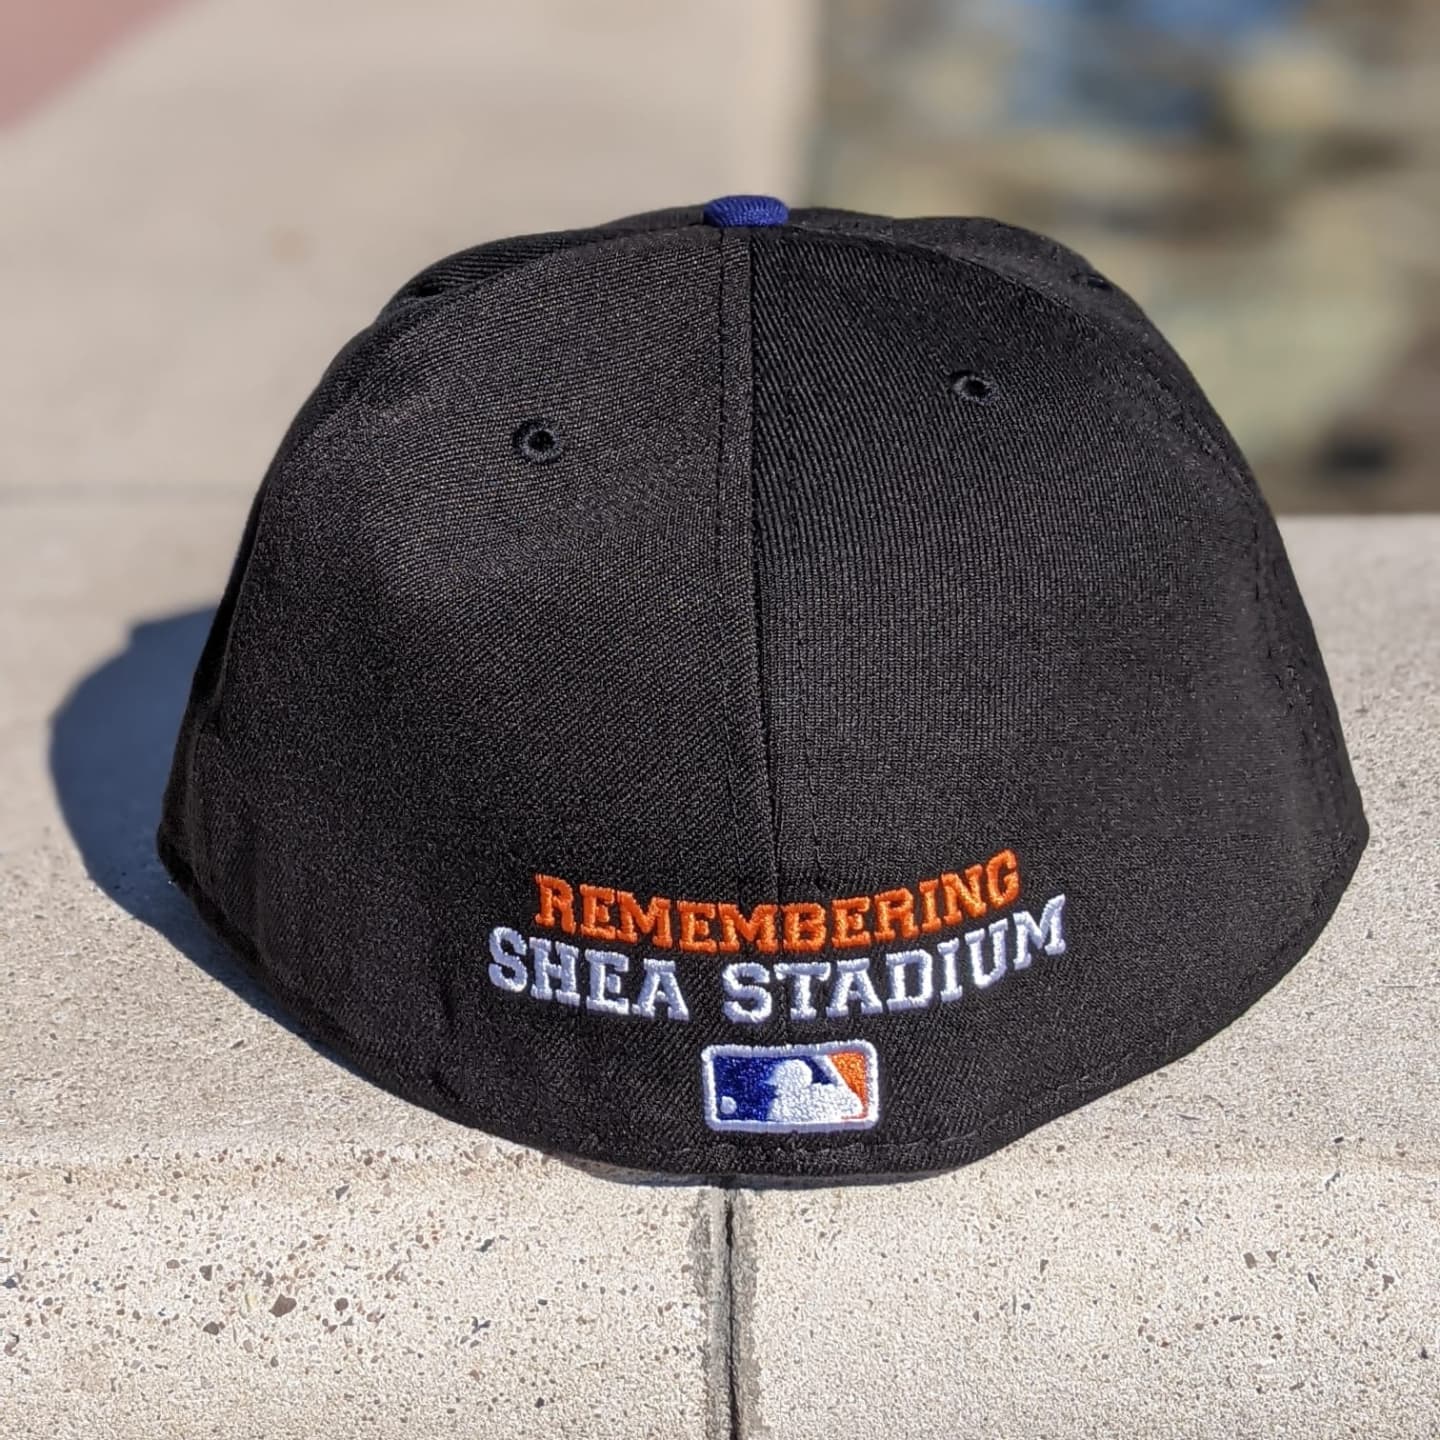 Remembering Shea: Mets Shea Stadium Custom